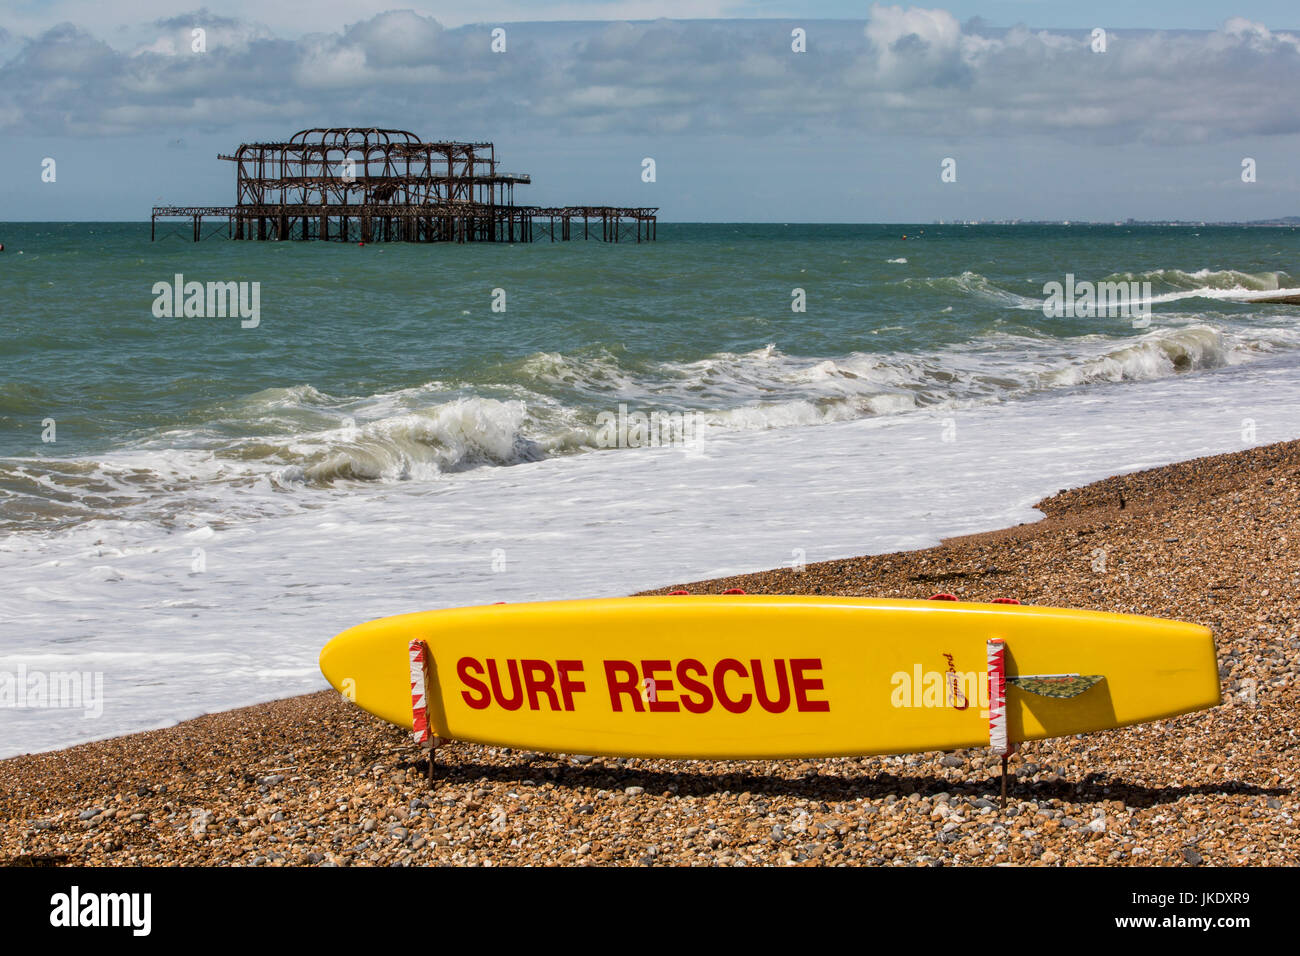 Surfbrett mit 'Surf Rescue"gemalt, auf einem Kiesstrand am Meer, mit die ausgebrannten Reste der Brighton Pier hinter. Stockfoto